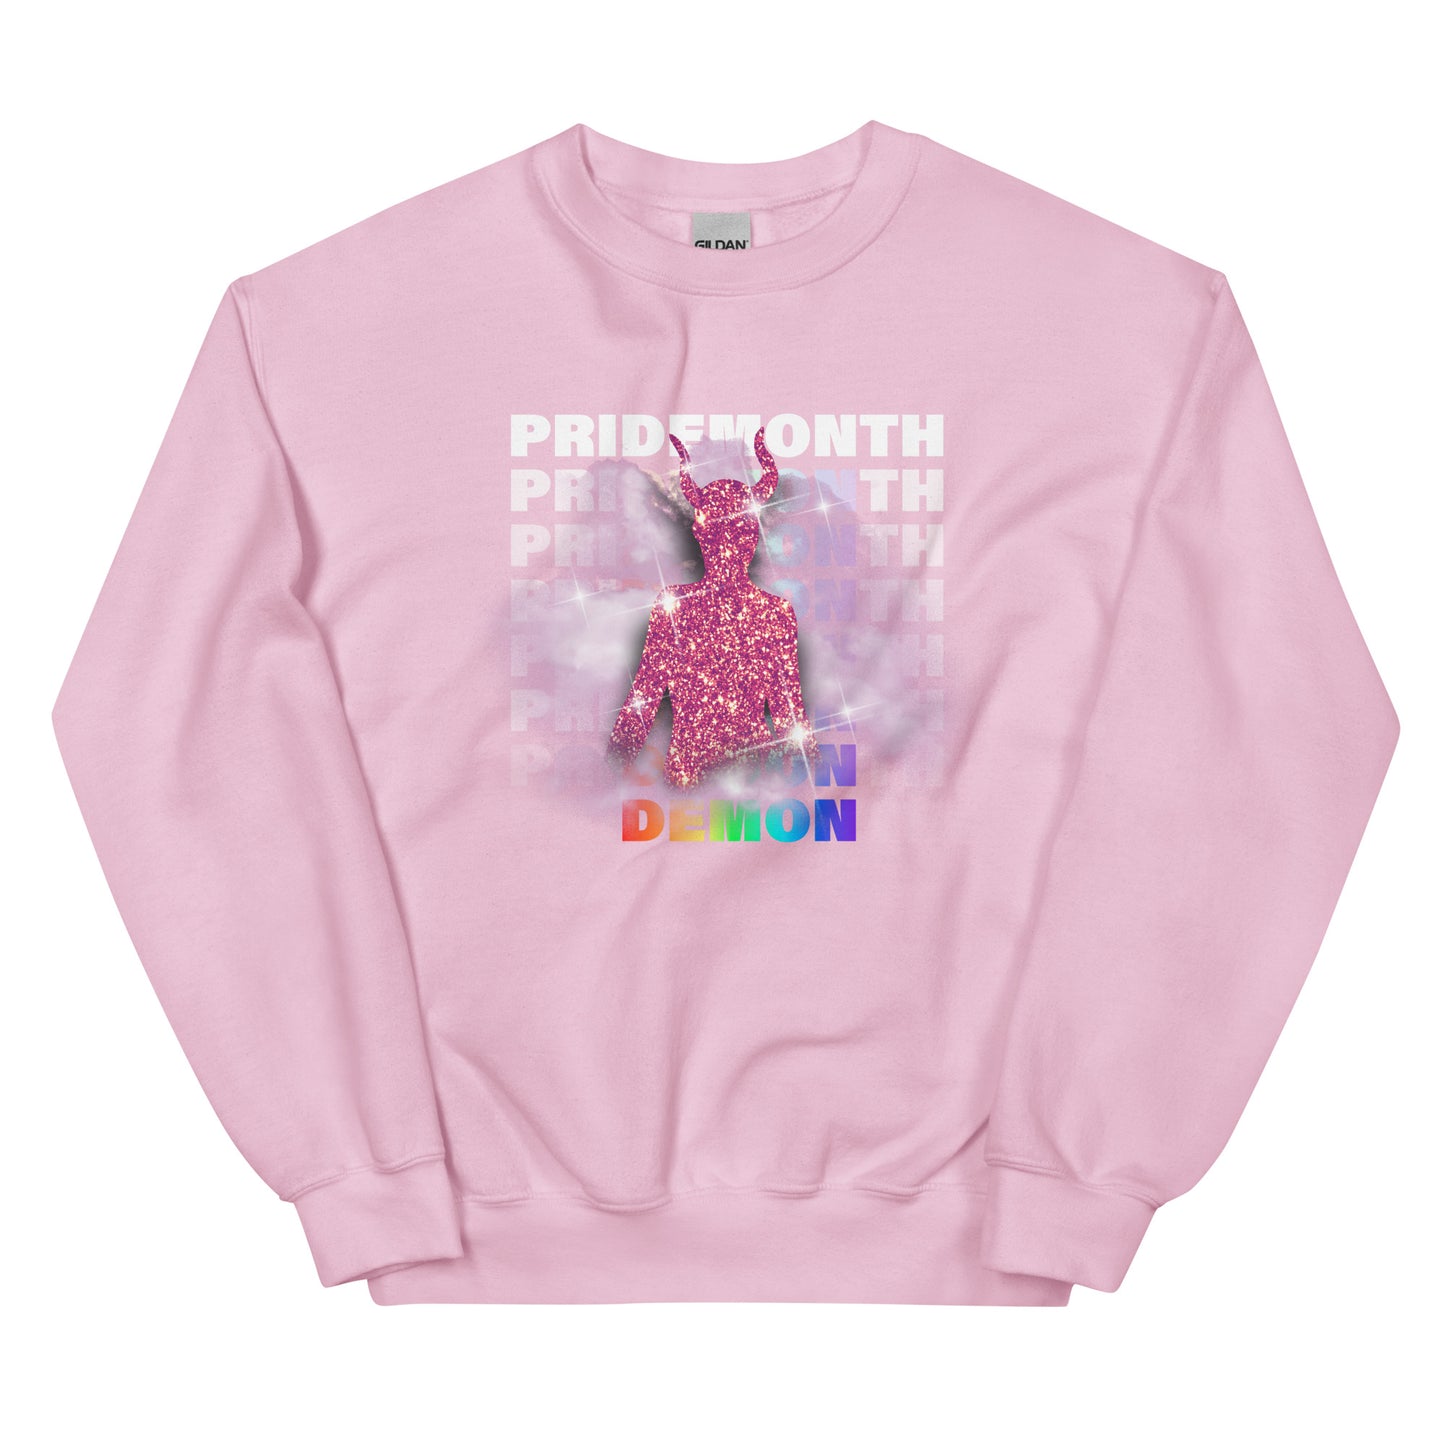 PRIDEMONTH (DEMON) Unisex Sweatshirt